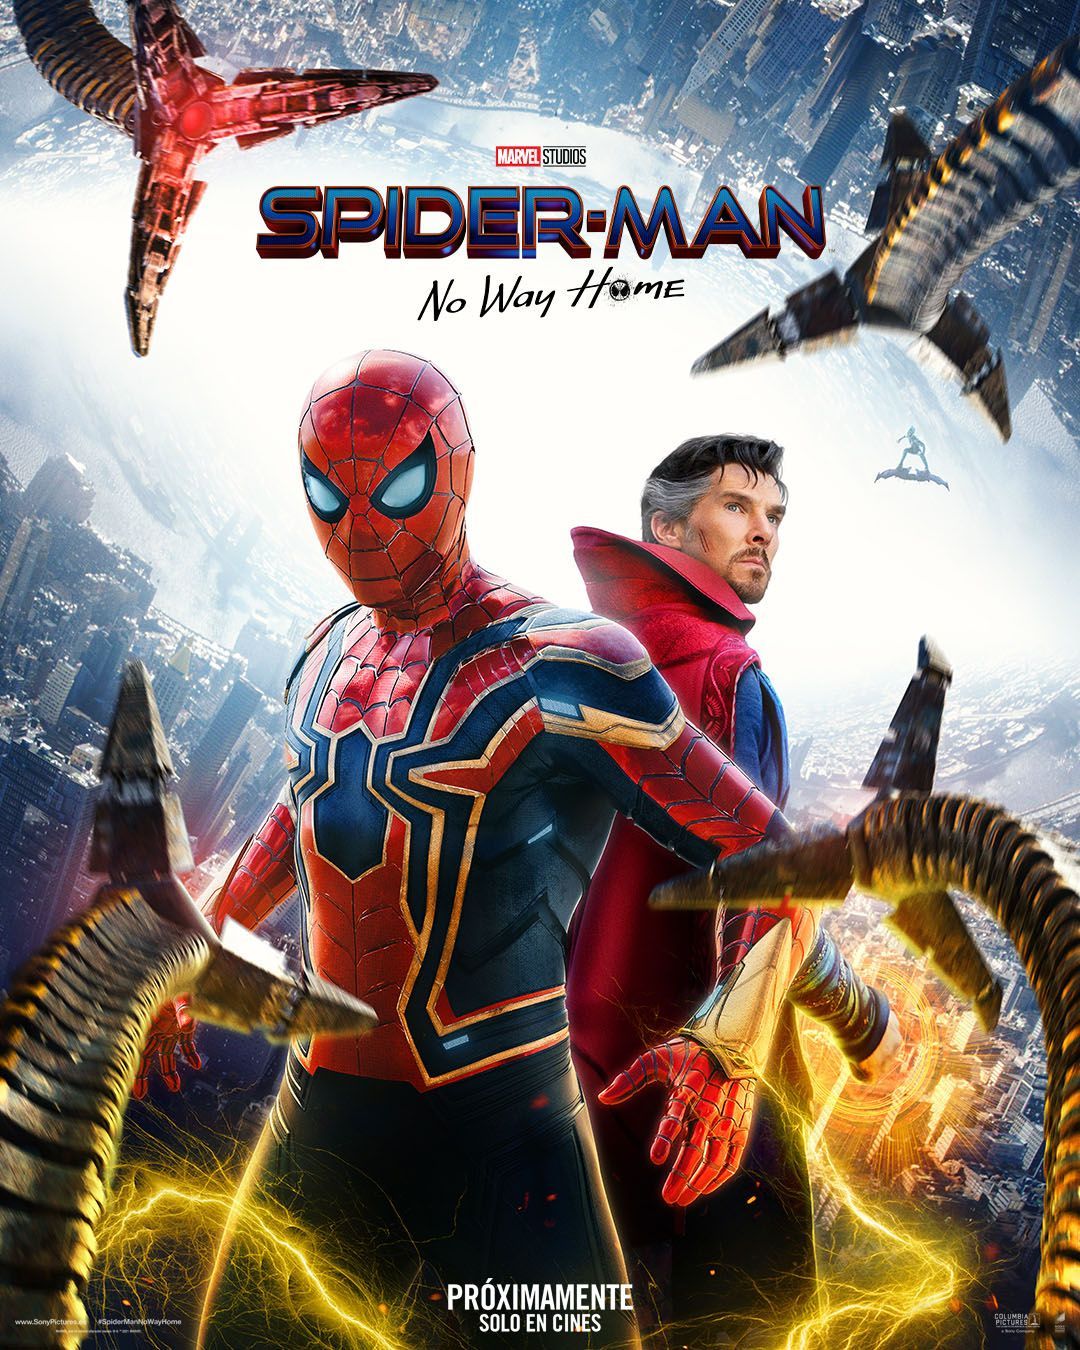 Spiderman No Hay Home es saca de los cines de Estados Unidos y Europa